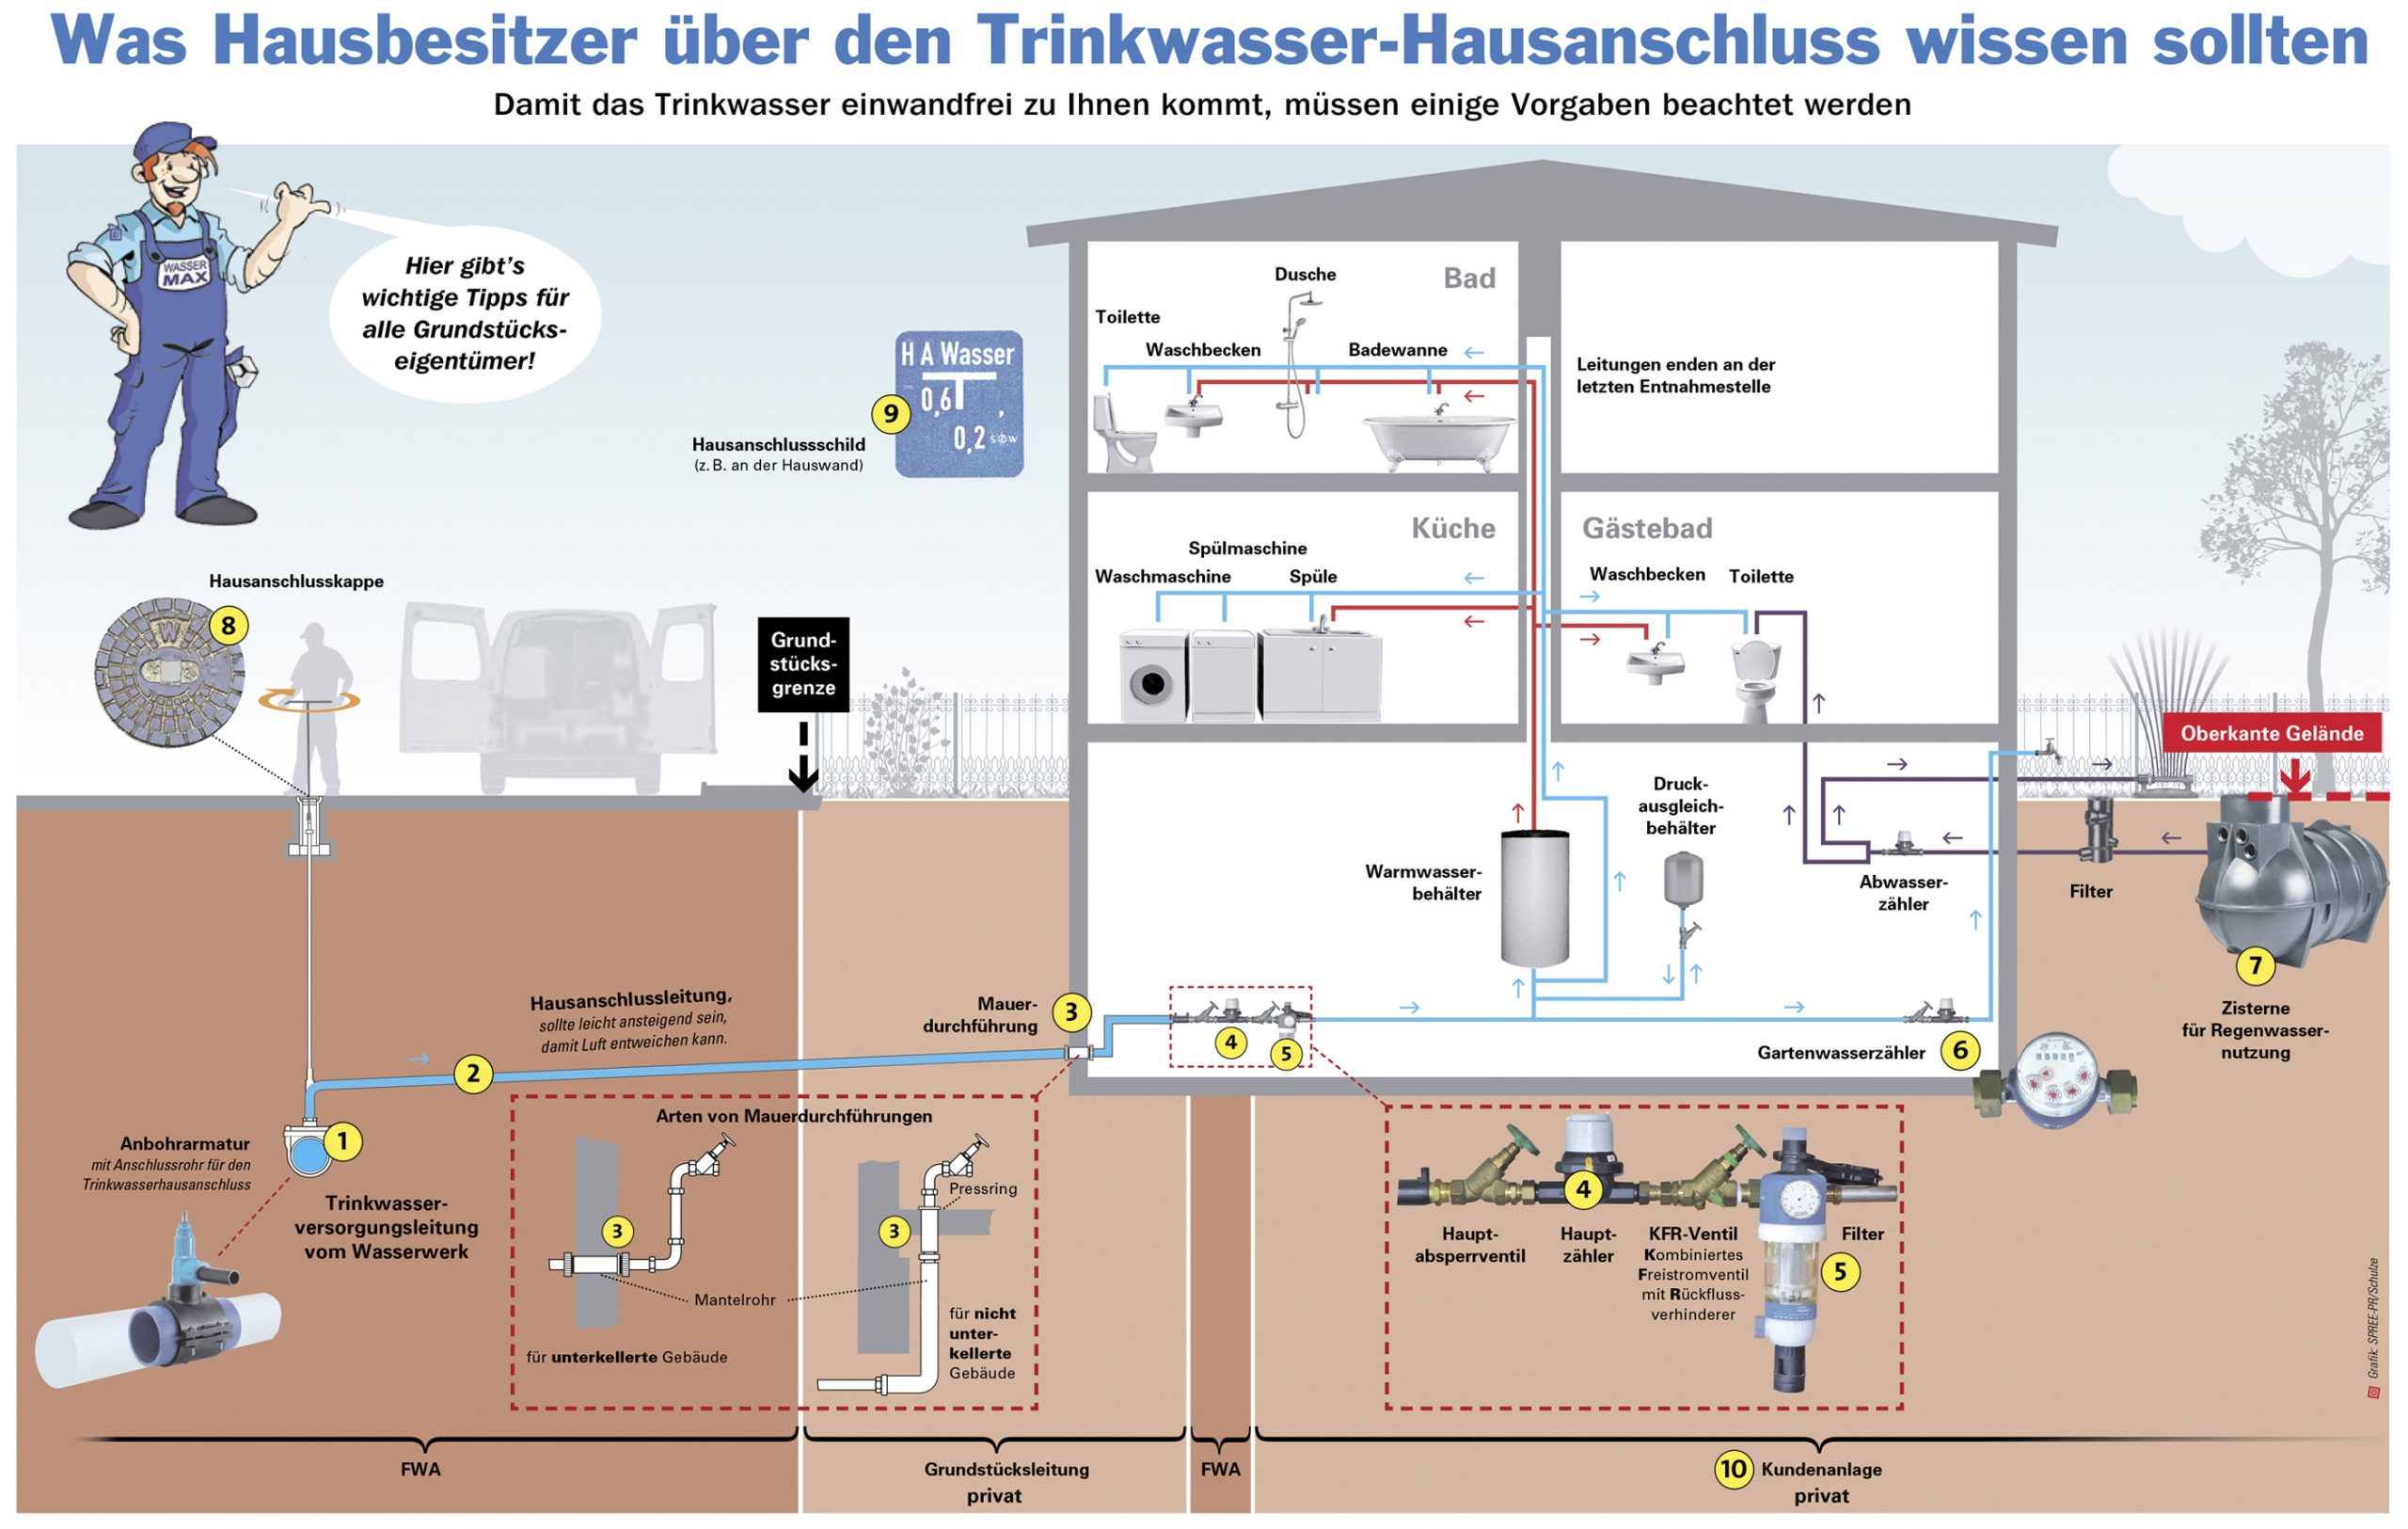 FWA Frankfurter Wasser- und Abwassergesellschaft mbHTrinkwasseranschluss -  FWA Frankfurter Wasser- und Abwassergesellschaft mbH